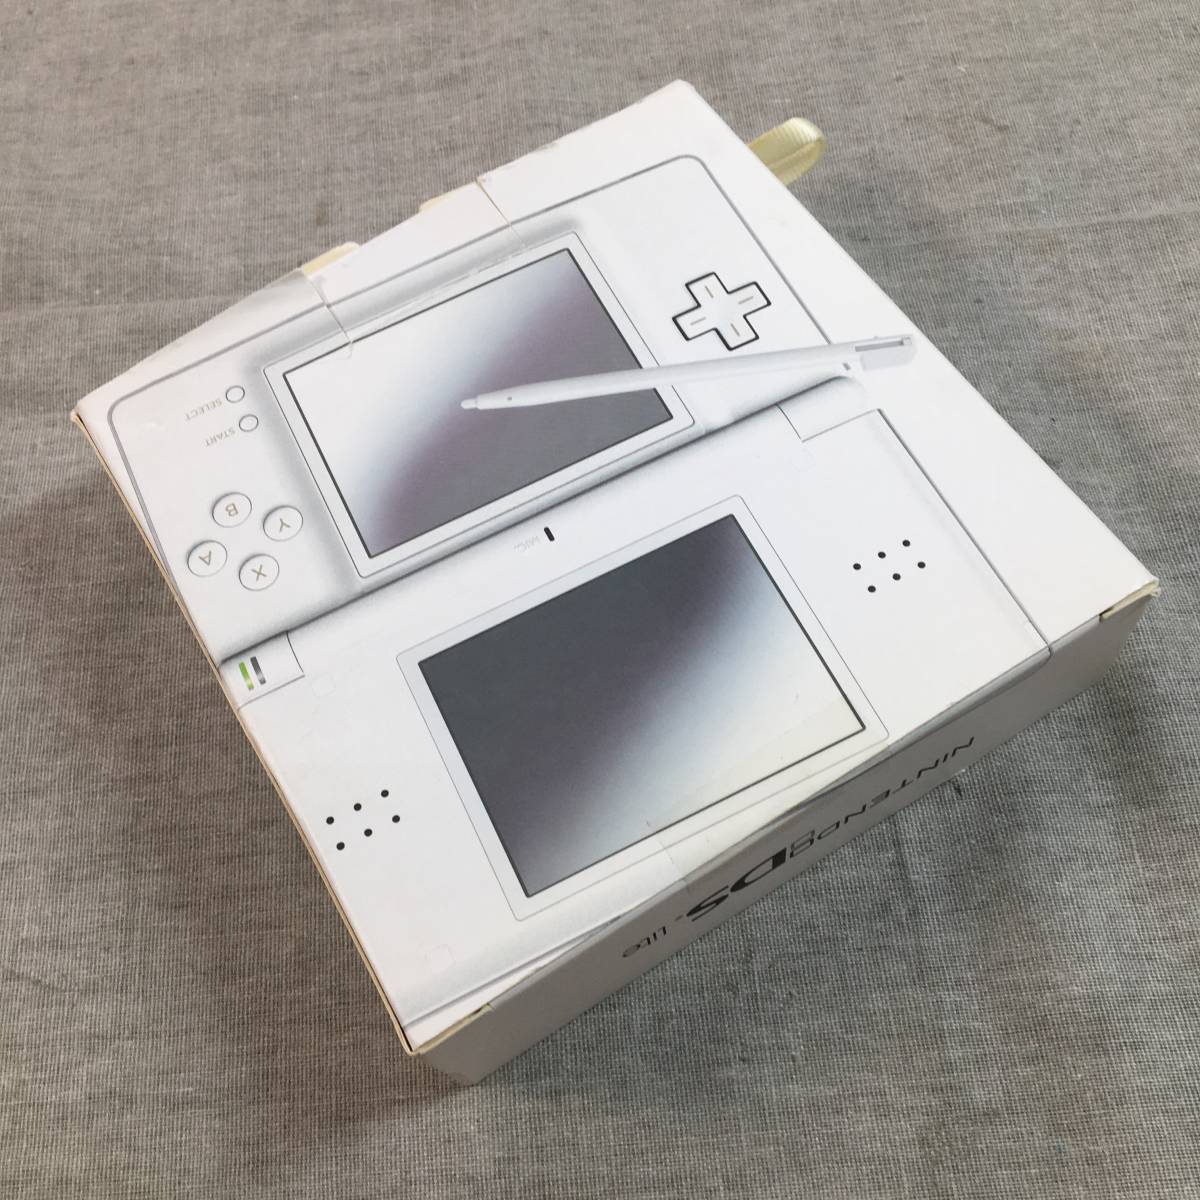 600円 百貨店 Nintendo NINTENDO DS ニンテンド-DS LITE クリスタ…